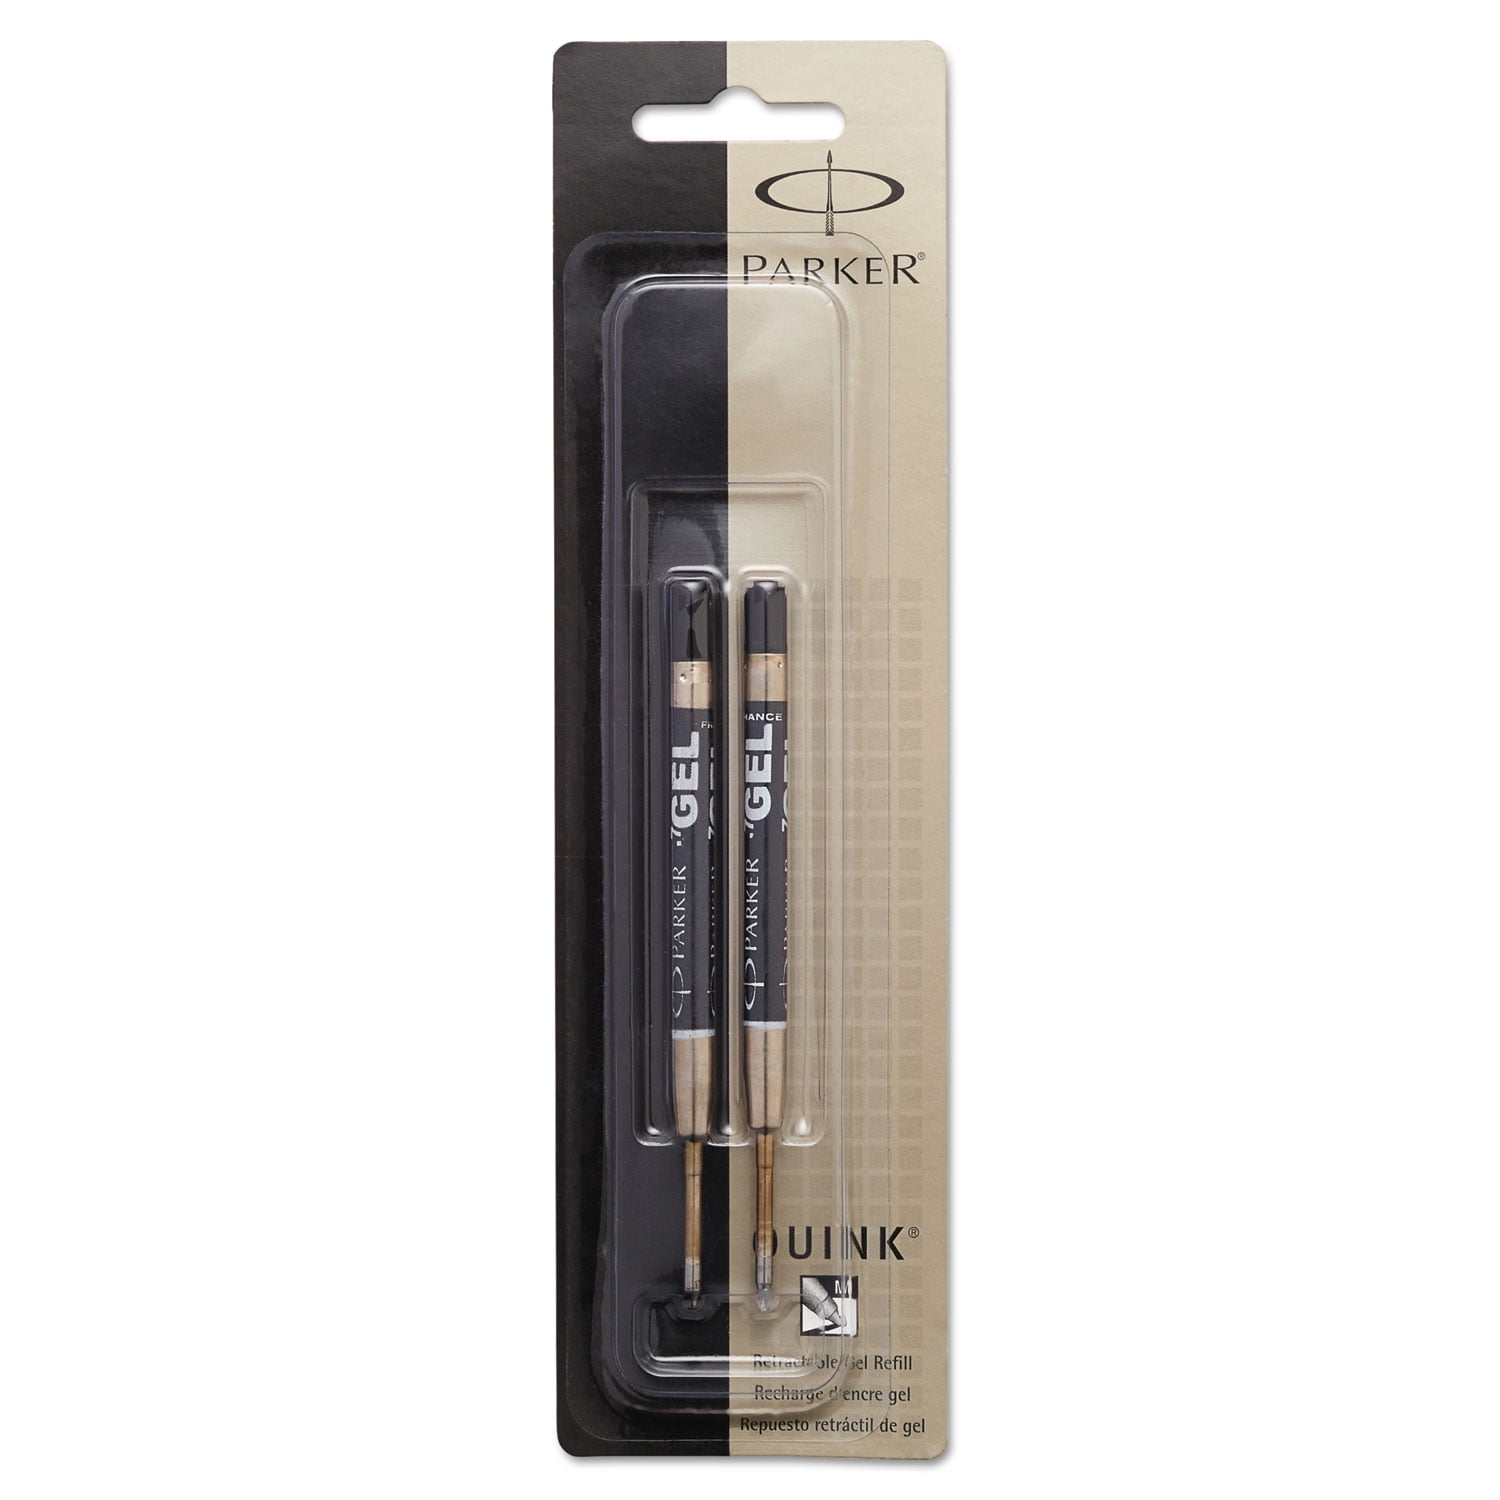 Parker Pen Rollerball Refill x 6 in Black Medium Tip 